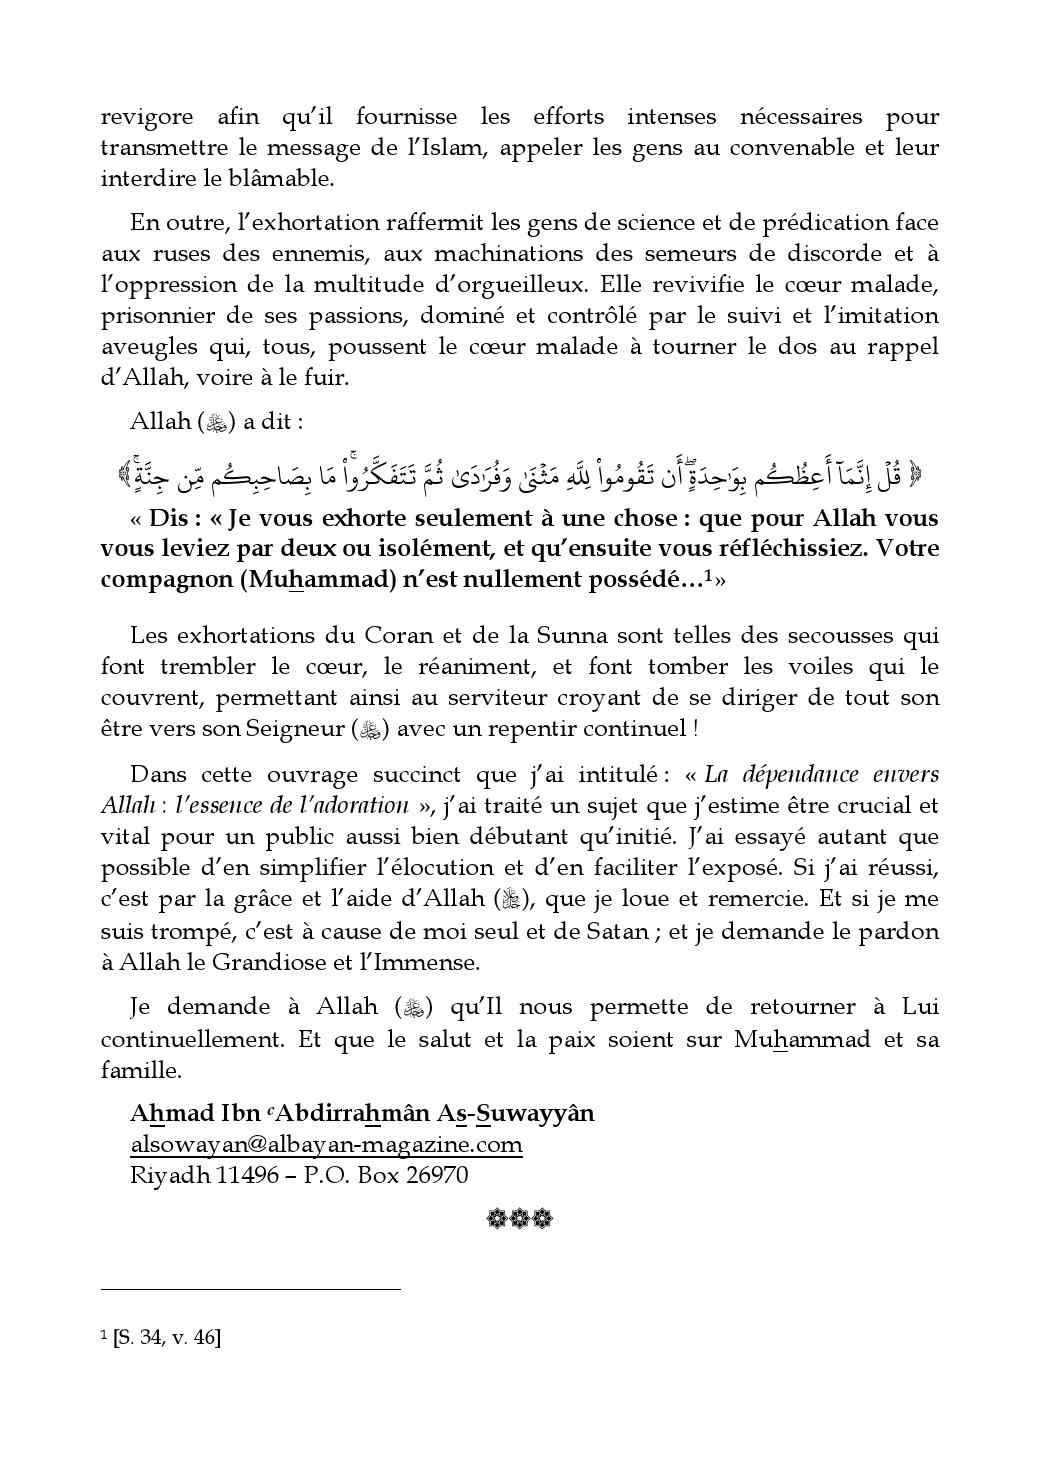 Dependance_en_Allah_Suwayyan.pdf, 70-Sayfa 